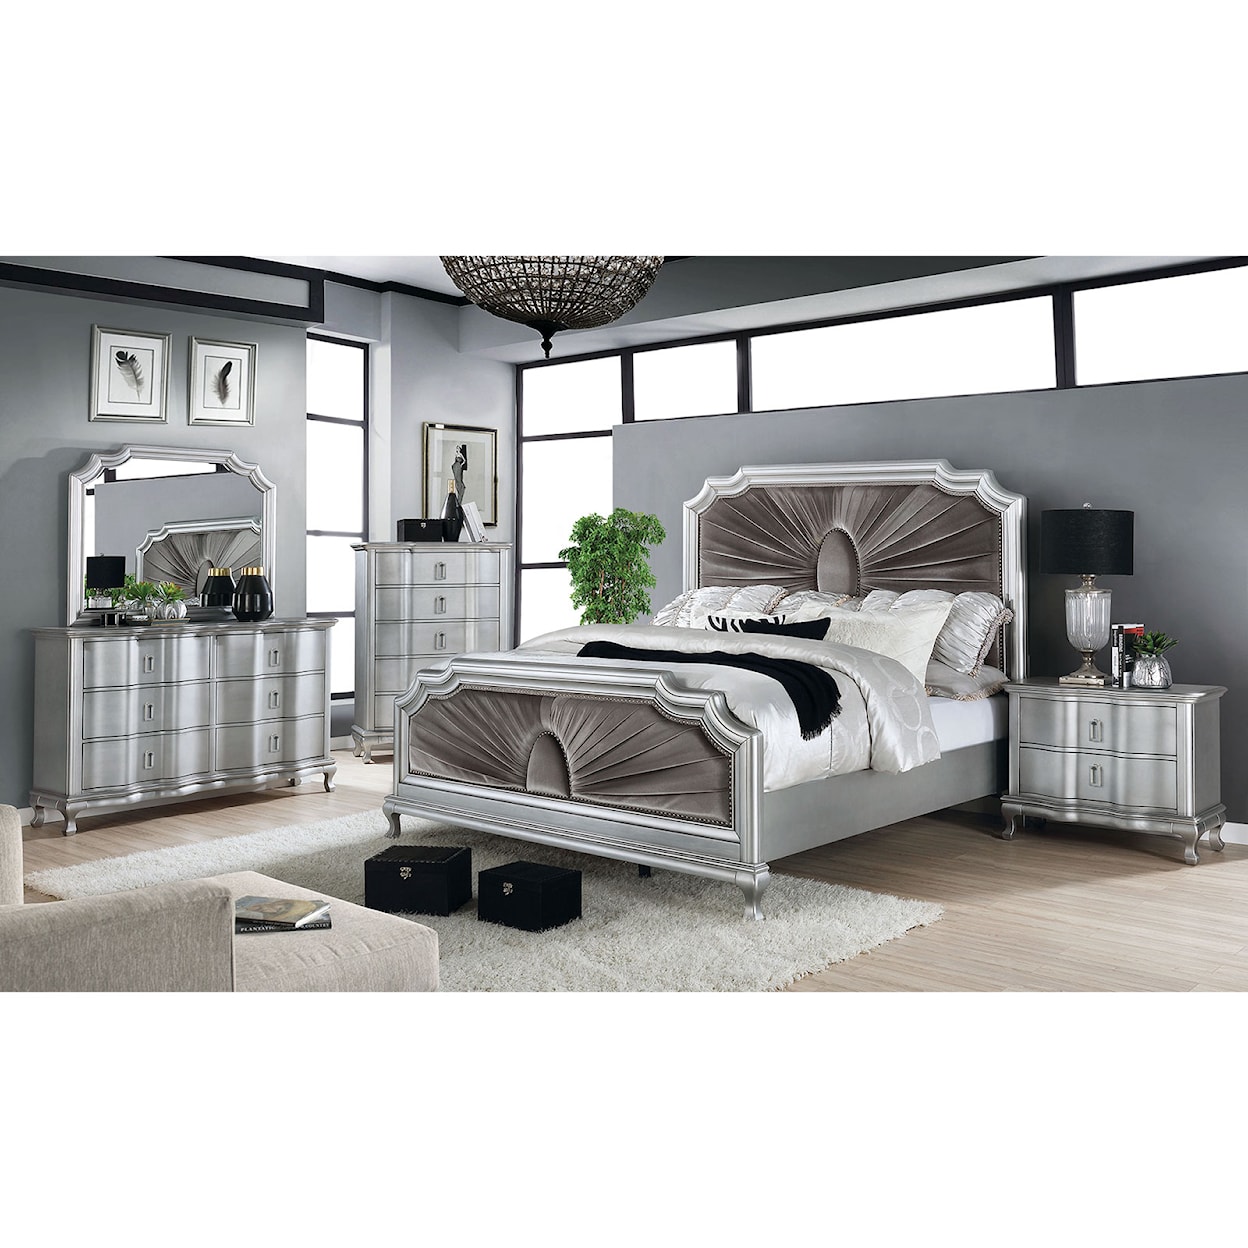 Furniture of America Aalok 4 Pc. Queen Bedroom Set